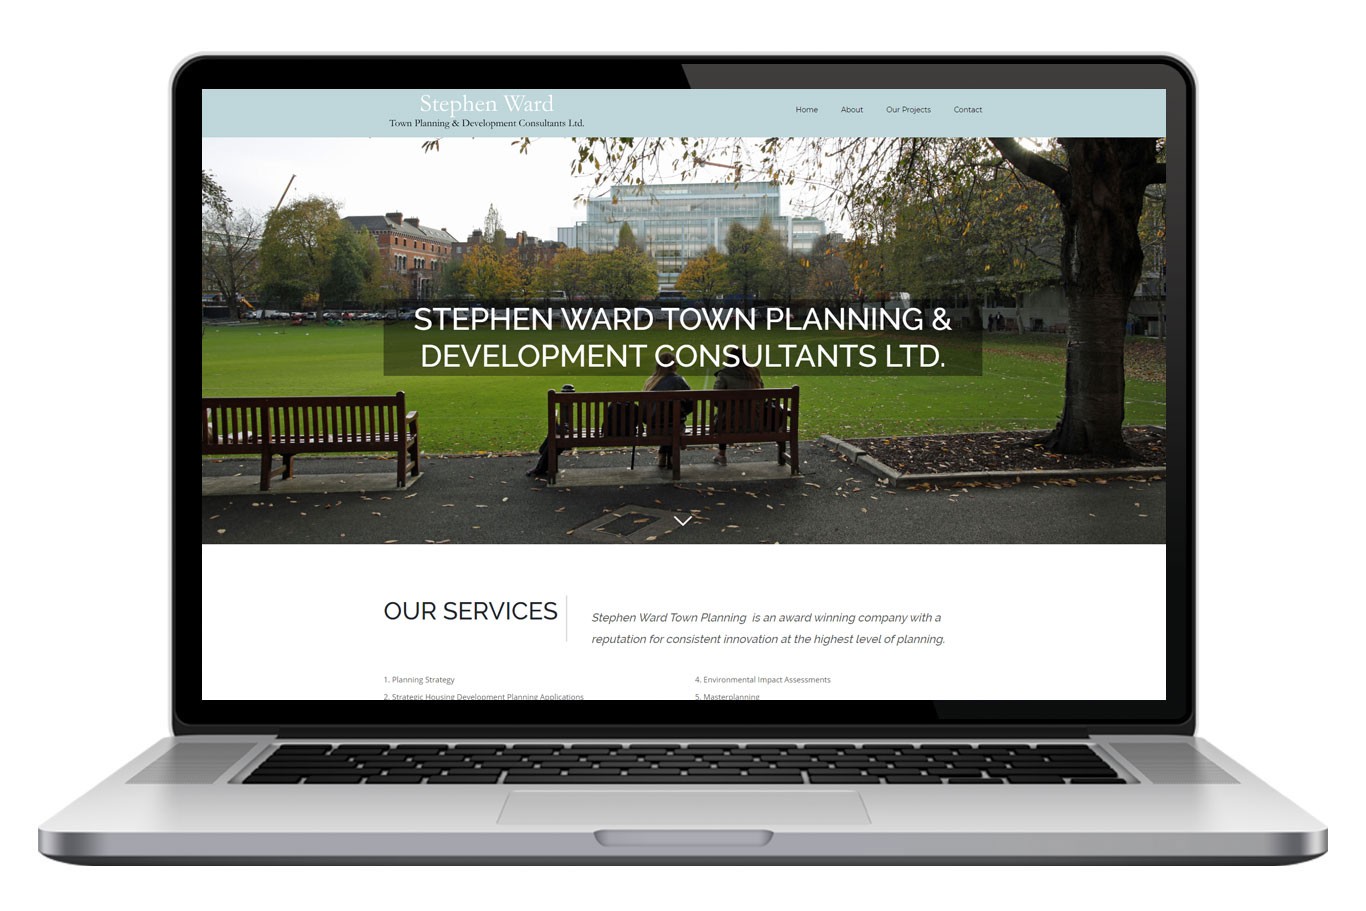 Stephen Ward Town Planning